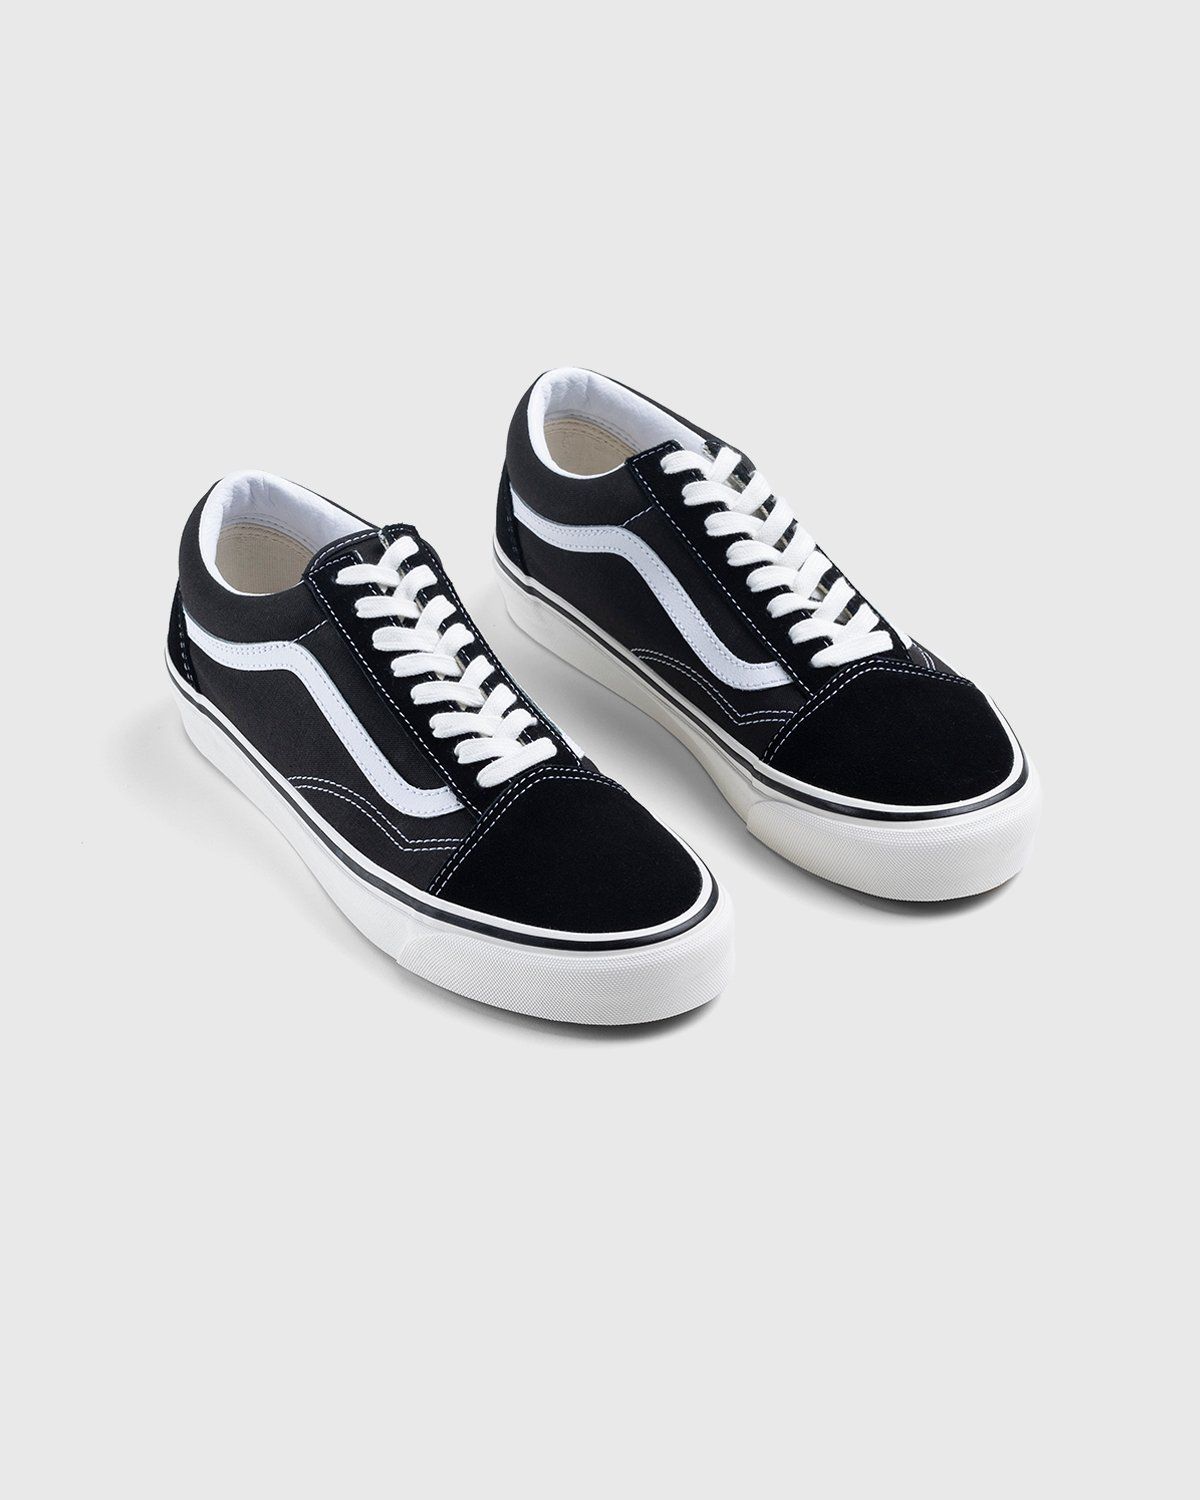 Vans – Anaheim Factory Old Skool 36 DX Black - Sneakers - Black - Image 3